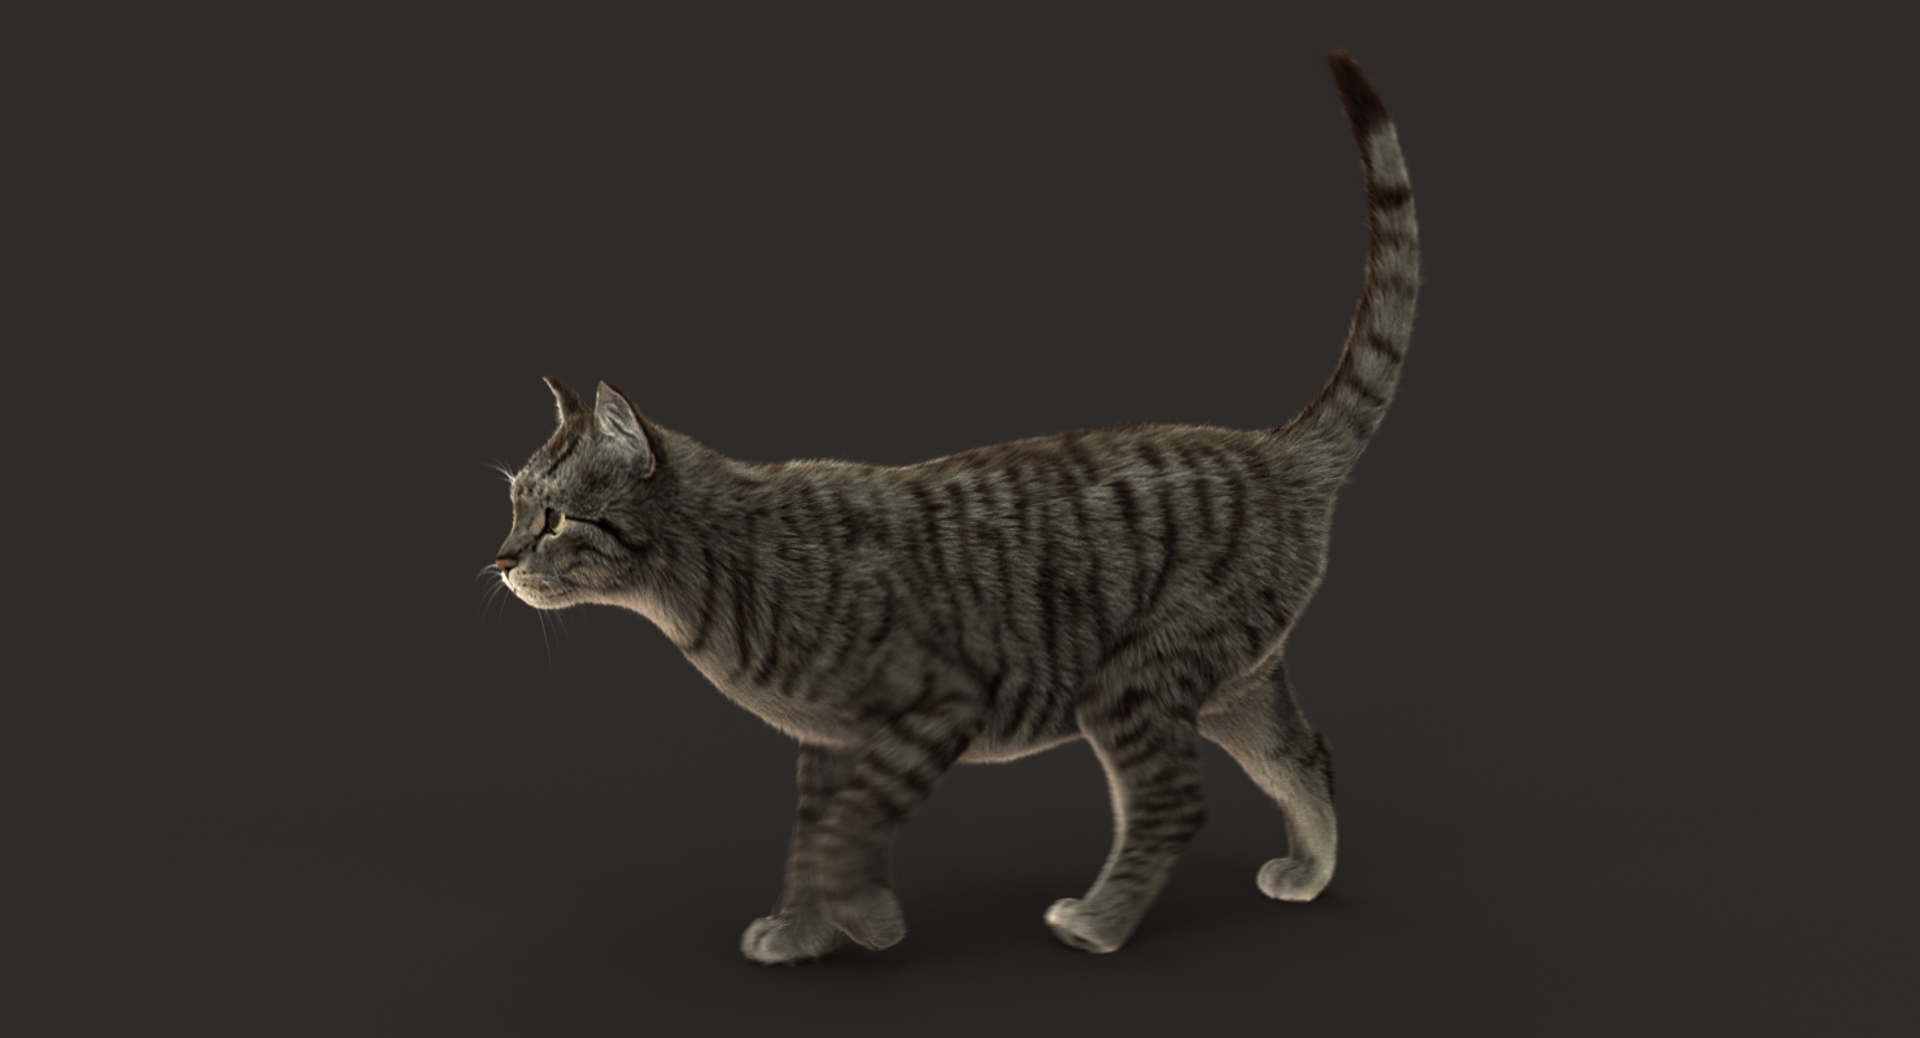 3D cat animation https://p.turbosquid.com/ts-thumb/5i/URL6KR/hvGZd2nB/walk/jpg/1536824154/1920x1080/turn_fit_q99/3dd359e32fdb3761f9536e2de15fc3d93f1e05c8/walk-1.jpg